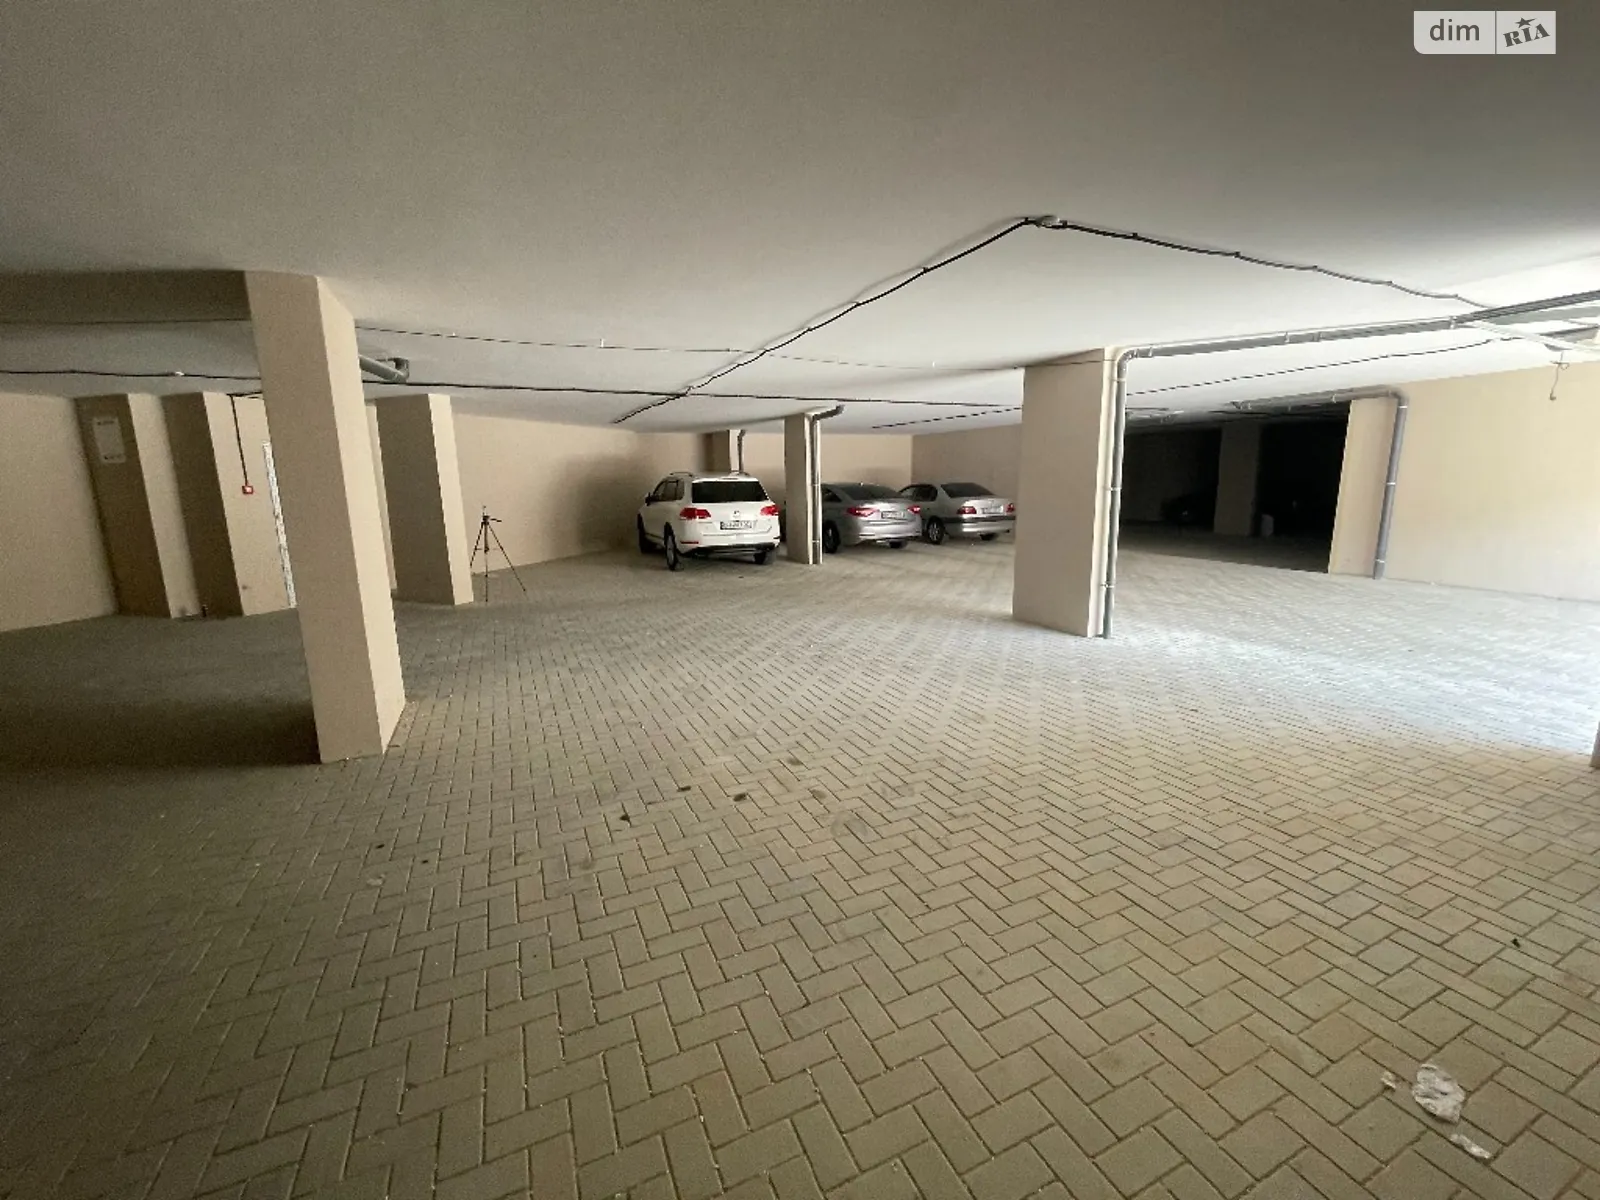 Продается подземный паркинг под легковое авто на 18.4 кв. м - фото 3